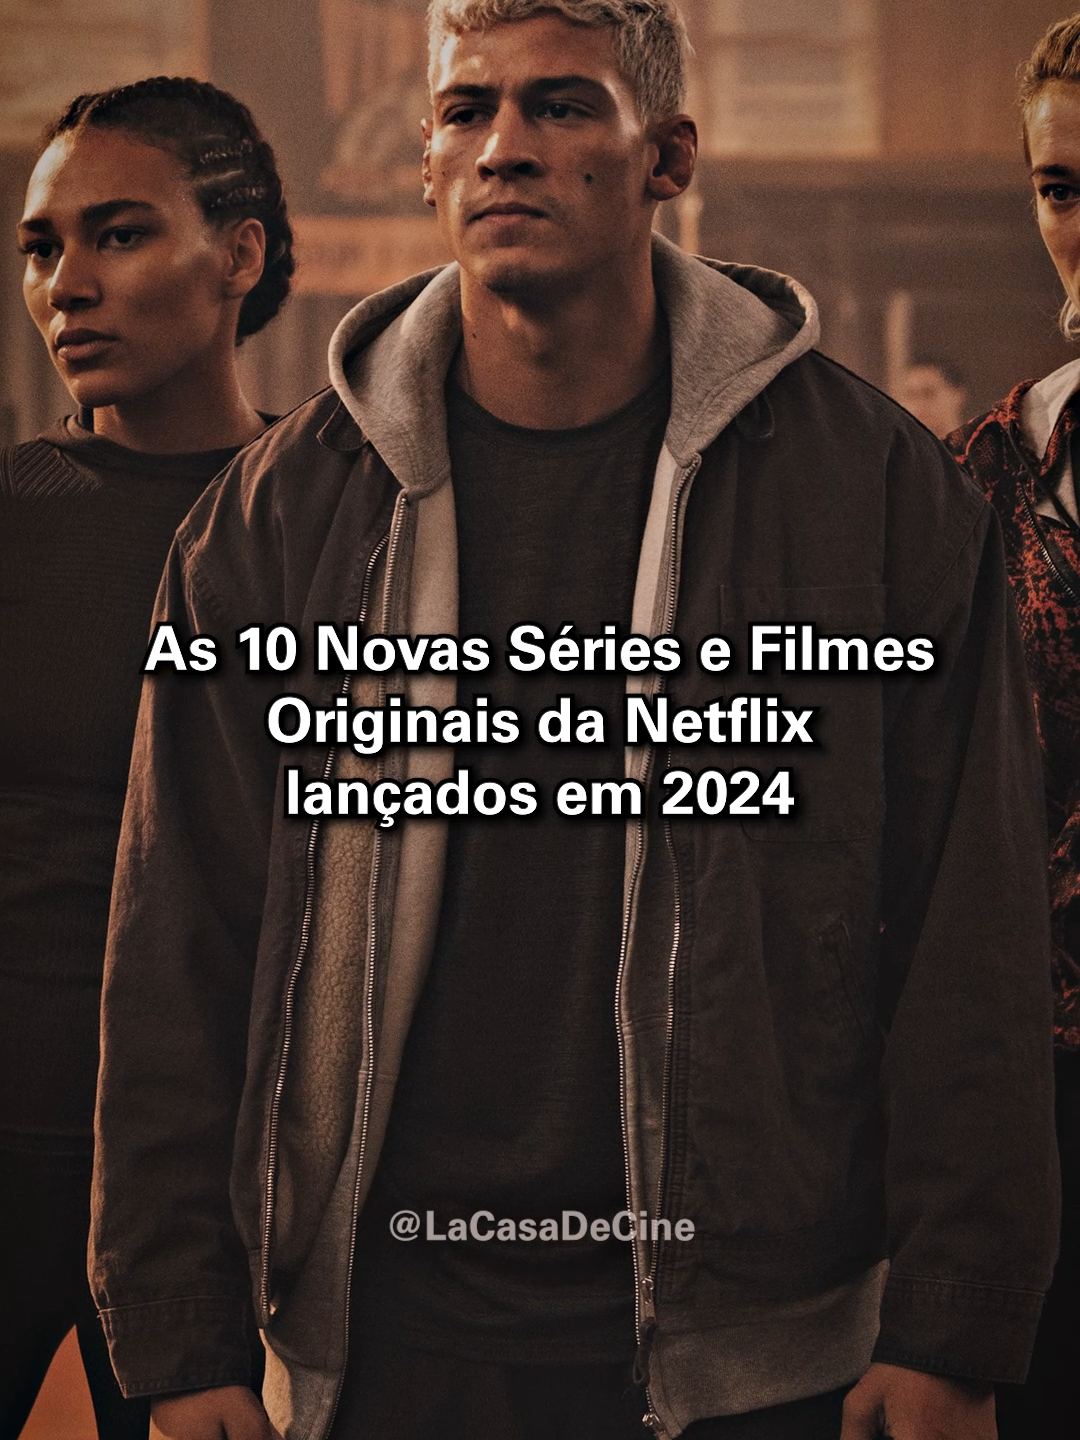 10 Novas Séries e Filmes Originais da Netflix lançados em 2024 #lacasadecine #filmes #dicasdefilmes #netflix #dicasdeseries